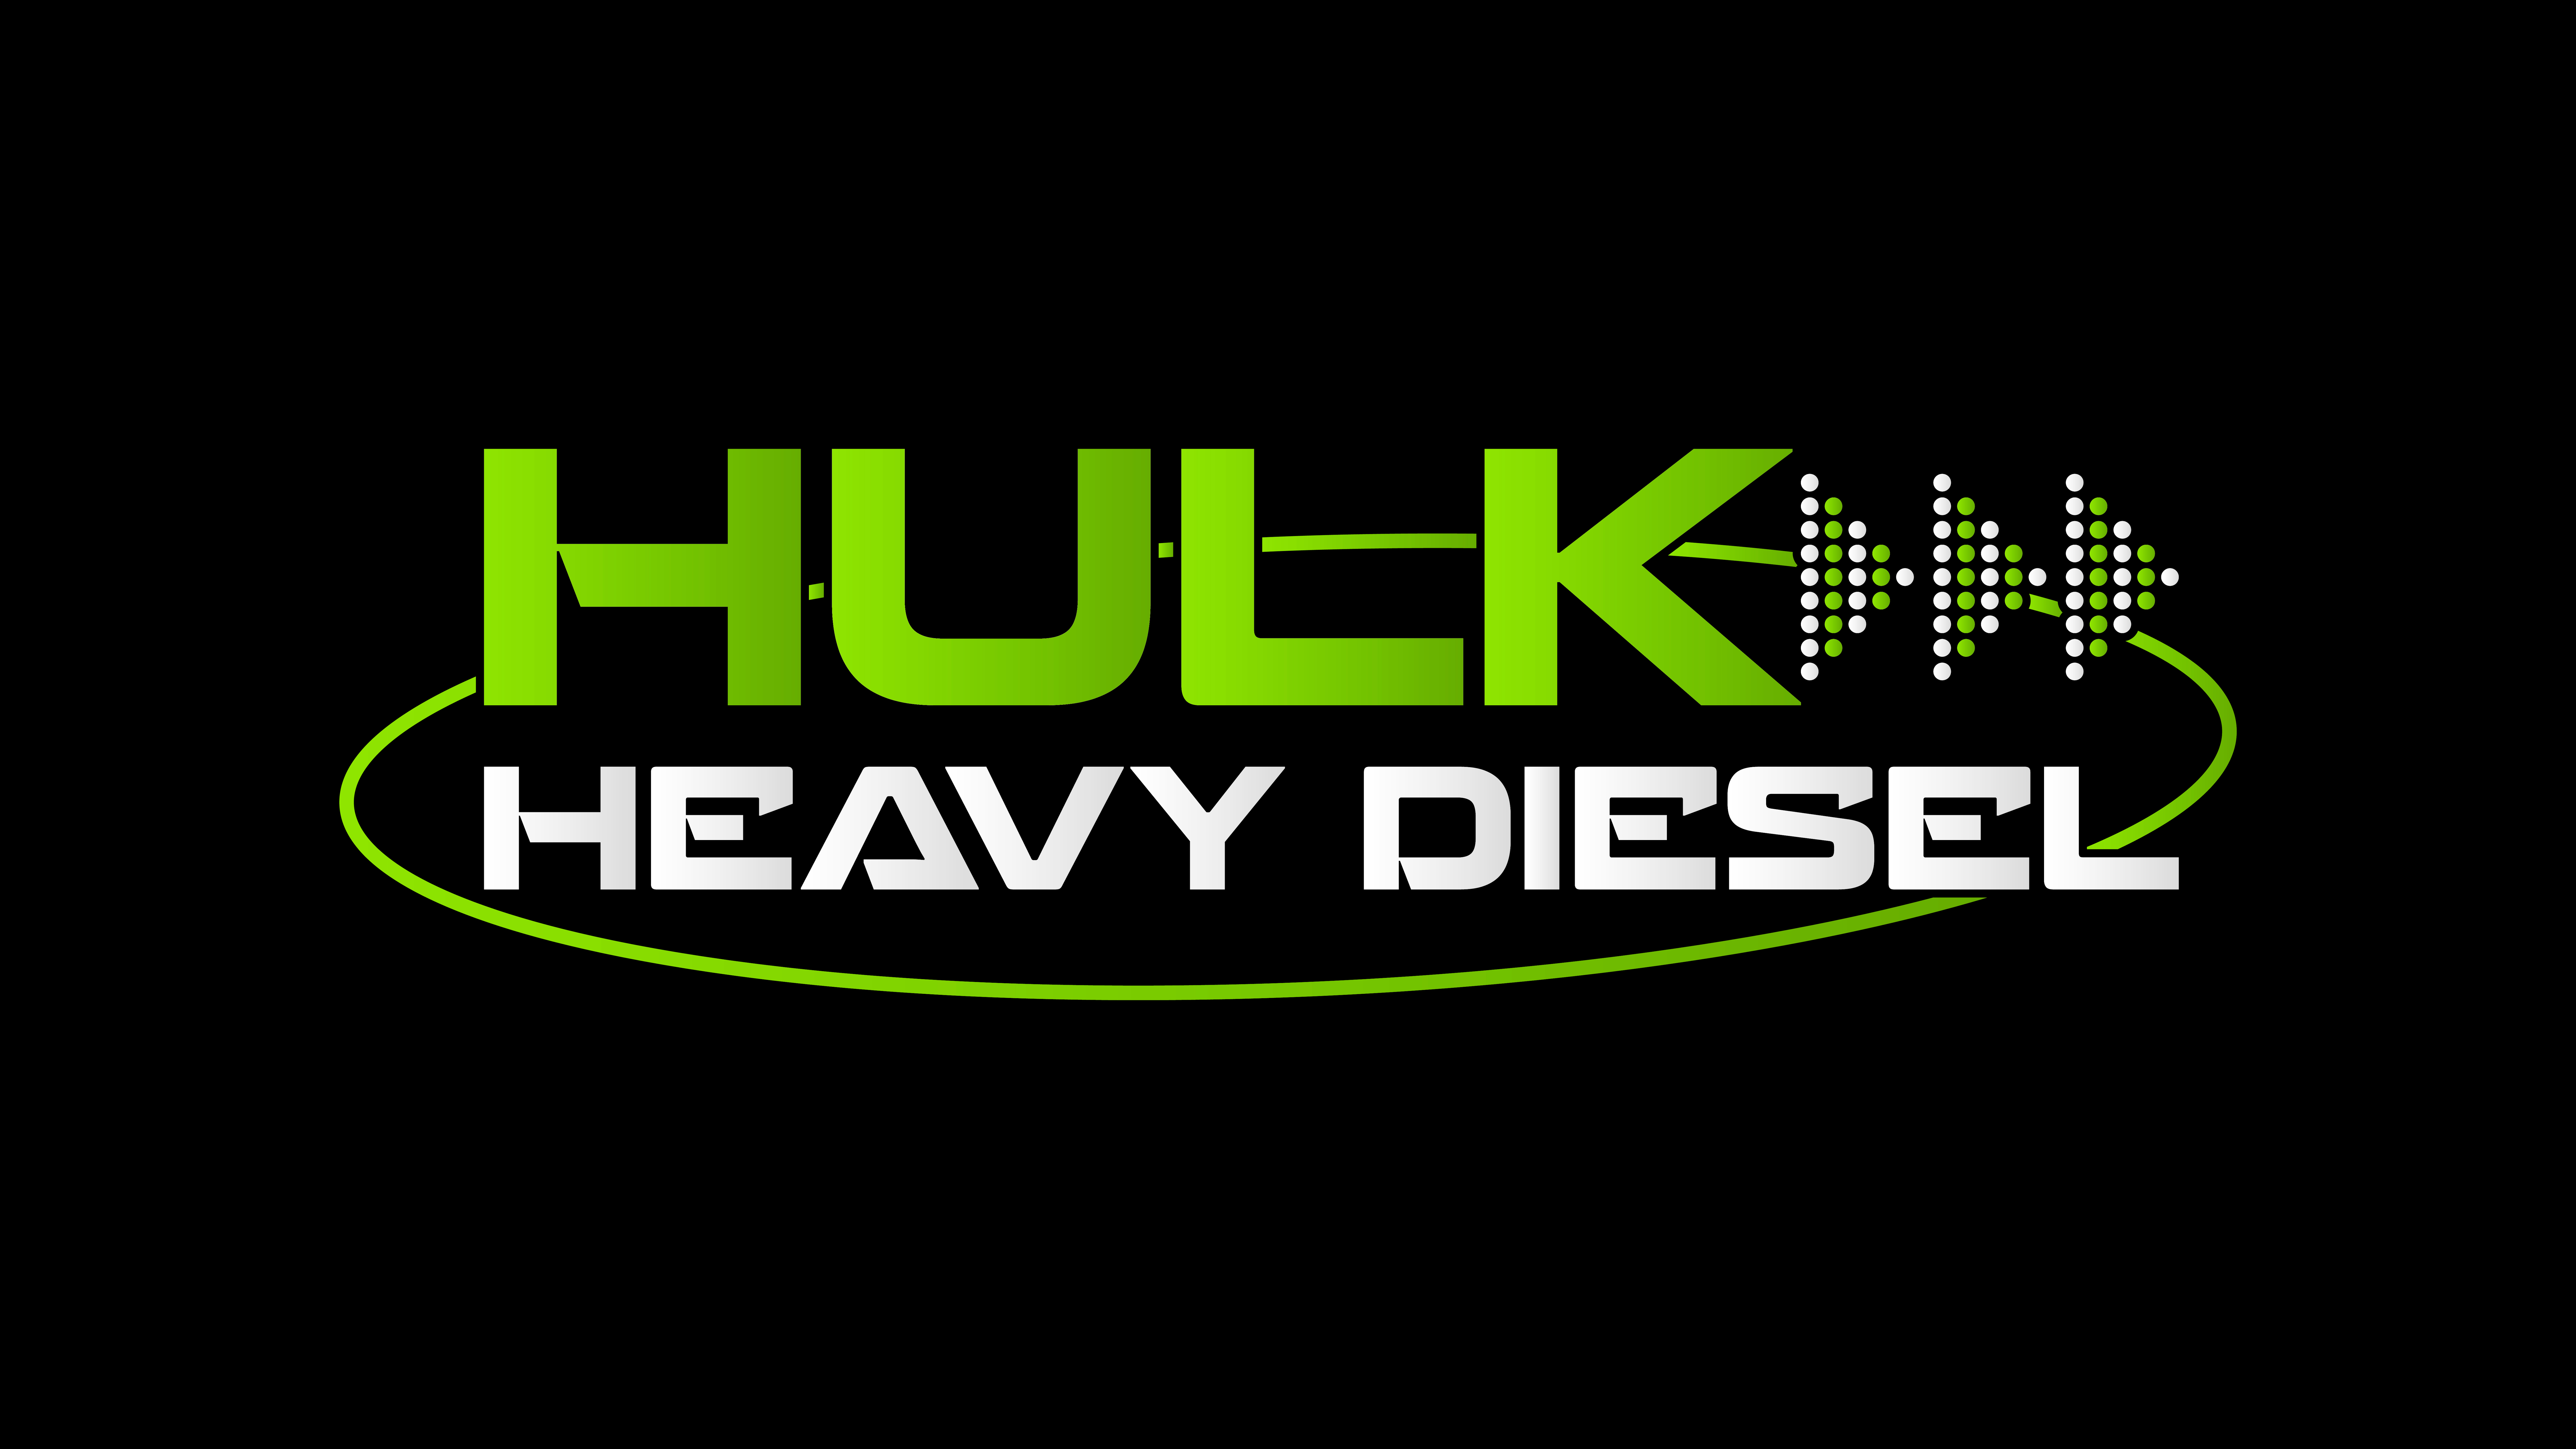 Hulk Heavy Diesel